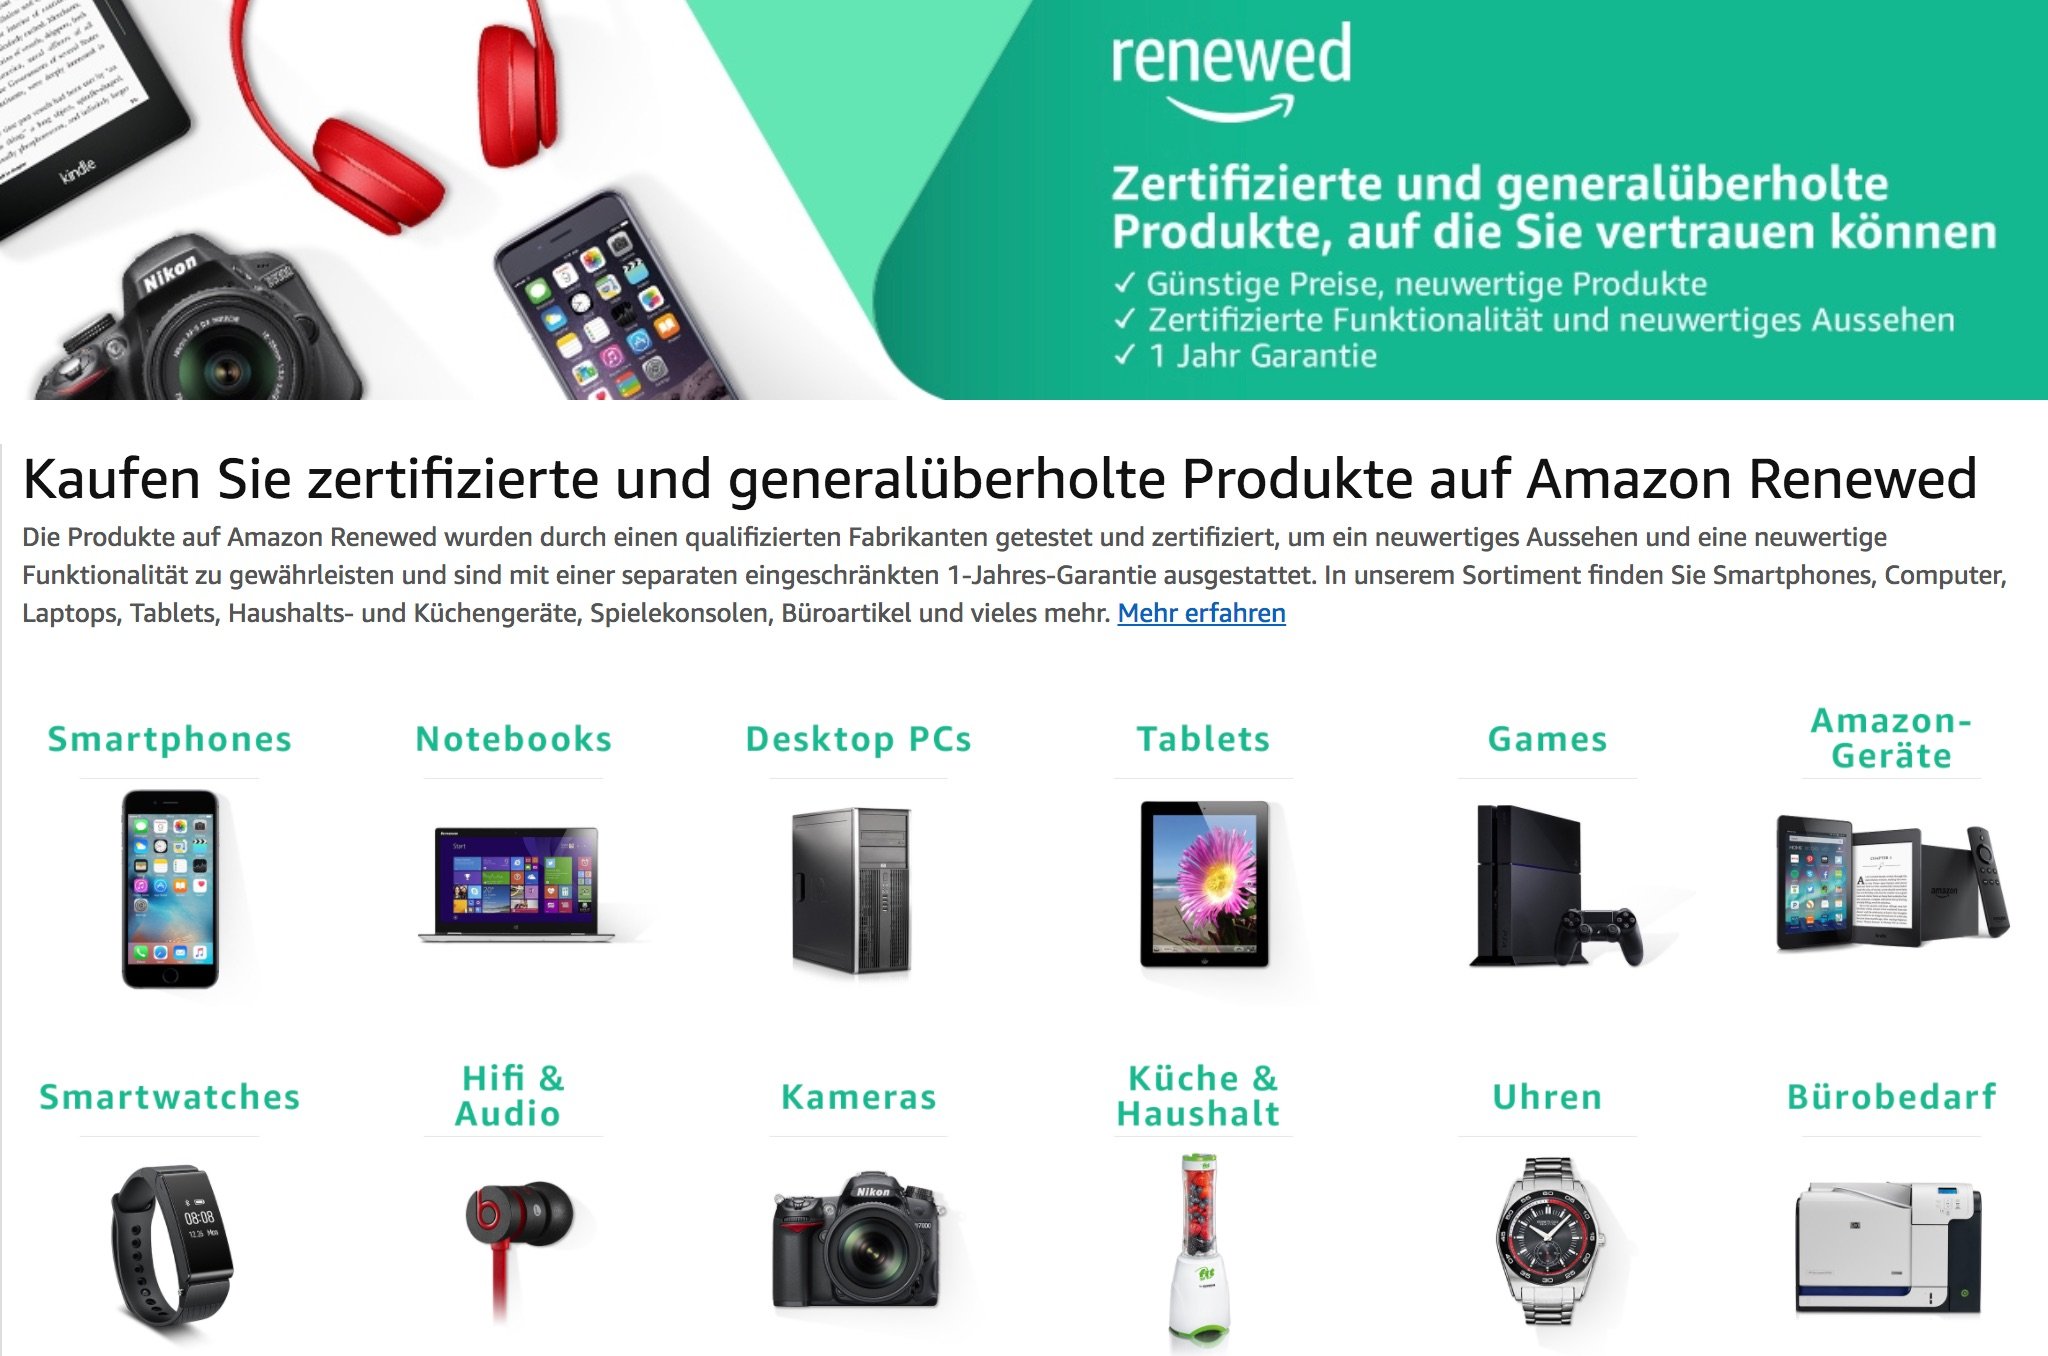 Renewed: Generalüberholte iPhones, iPads, Apple Watches, iMacs & Macbooks 7